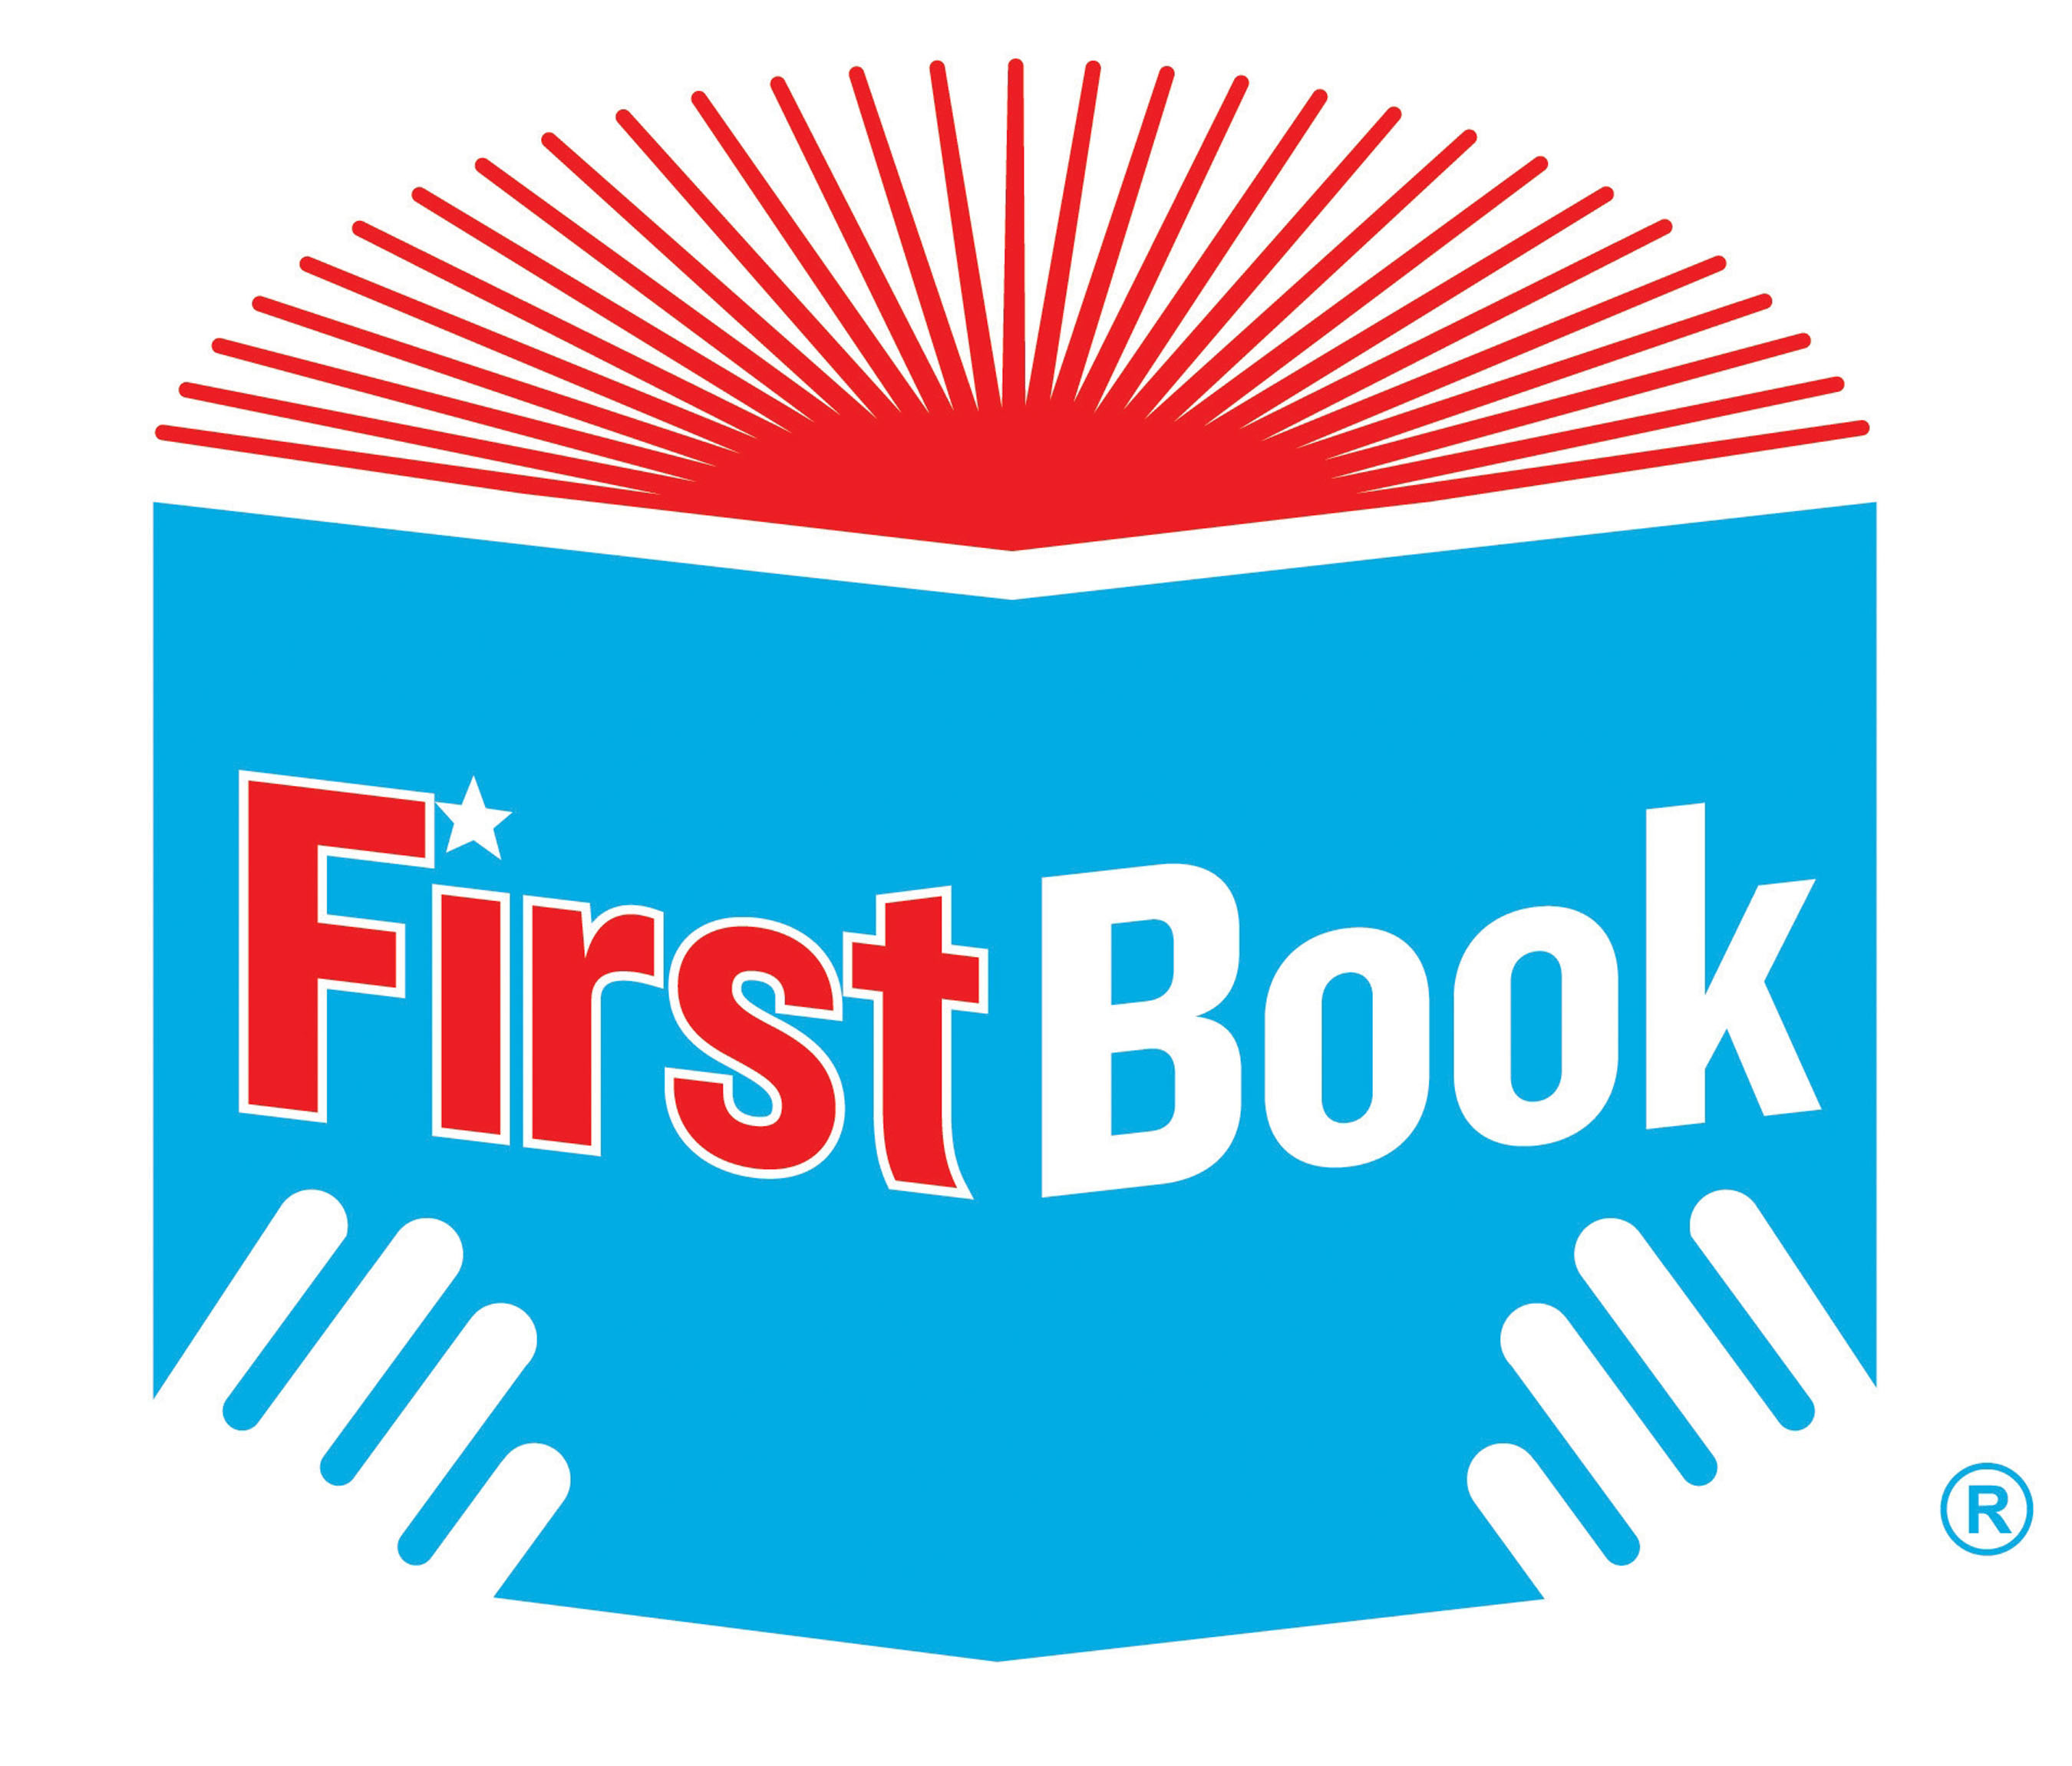 First Book logo.